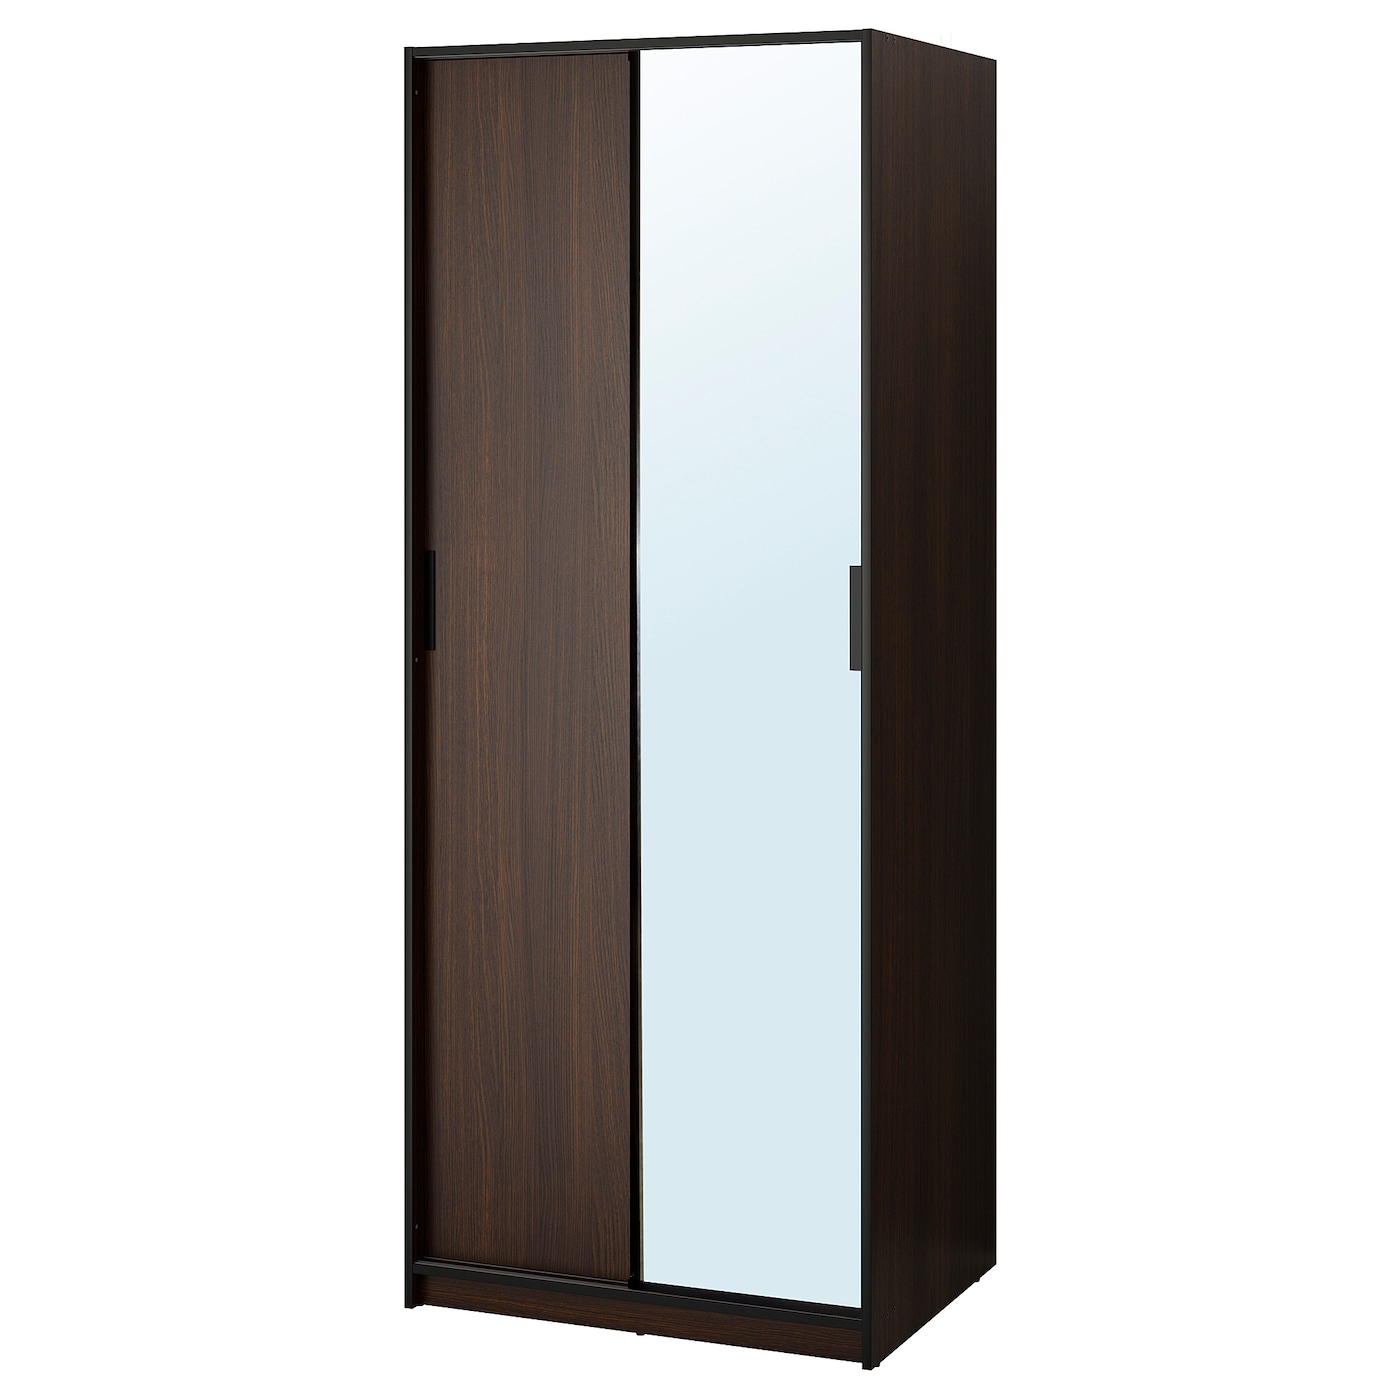 Trysil ТРИСИЛ гардероб, темно-коричневый/зеркальное стекло79x61x202 см